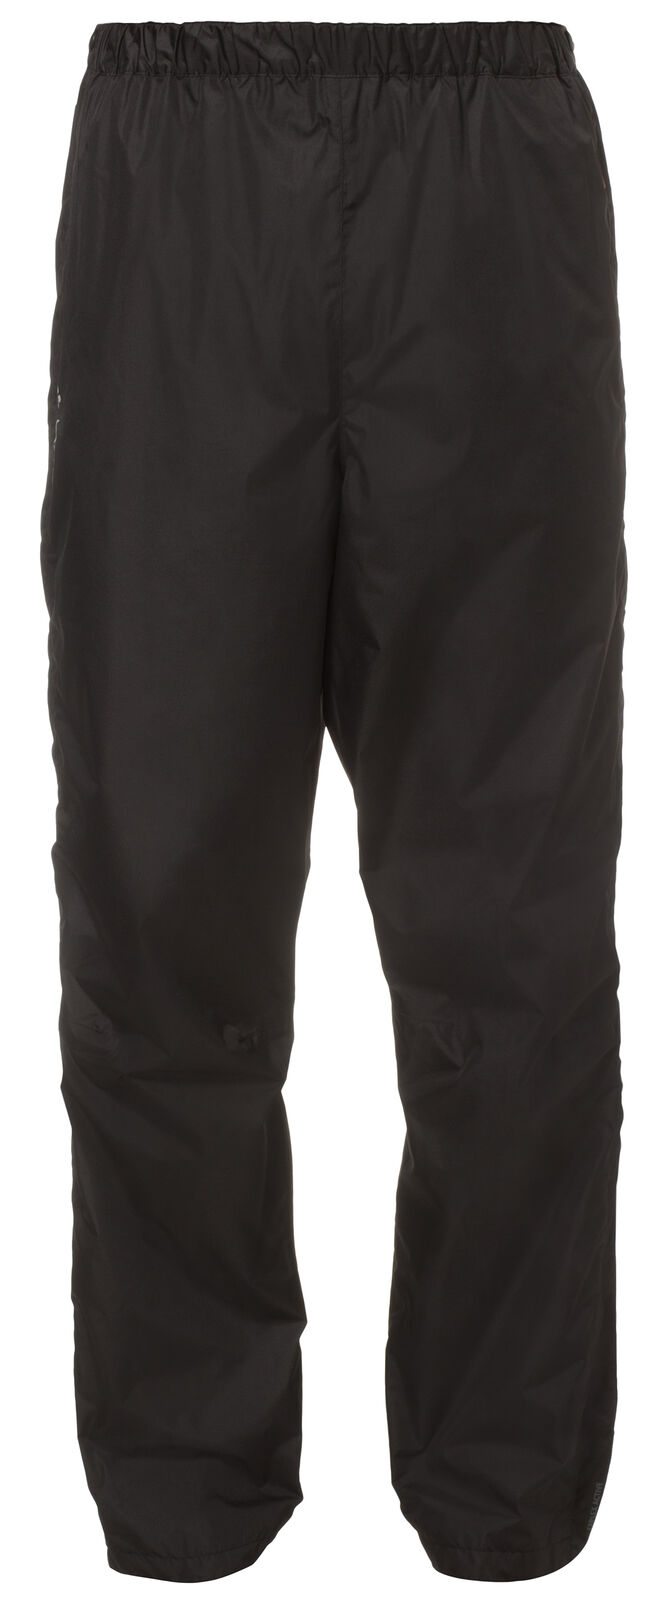 Vaude - Fluid Full-Zip Pants II - Pantaloni impermeabili - Uomo